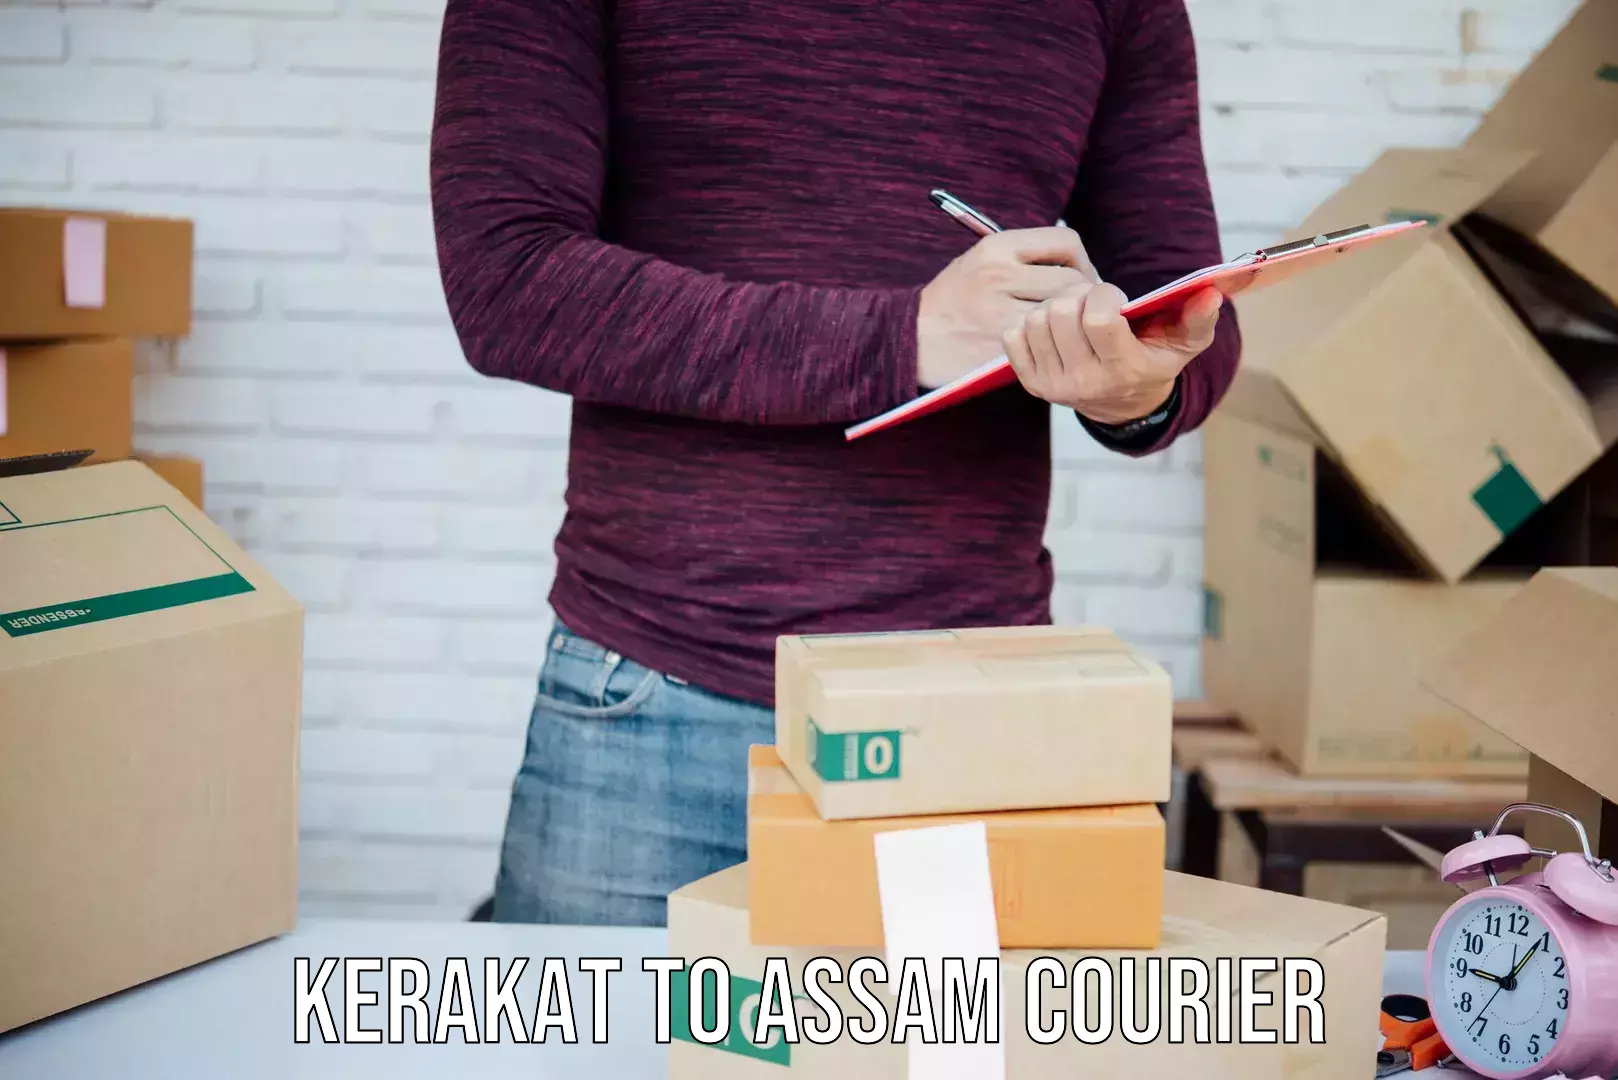 Quick parcel dispatch Kerakat to Baihata